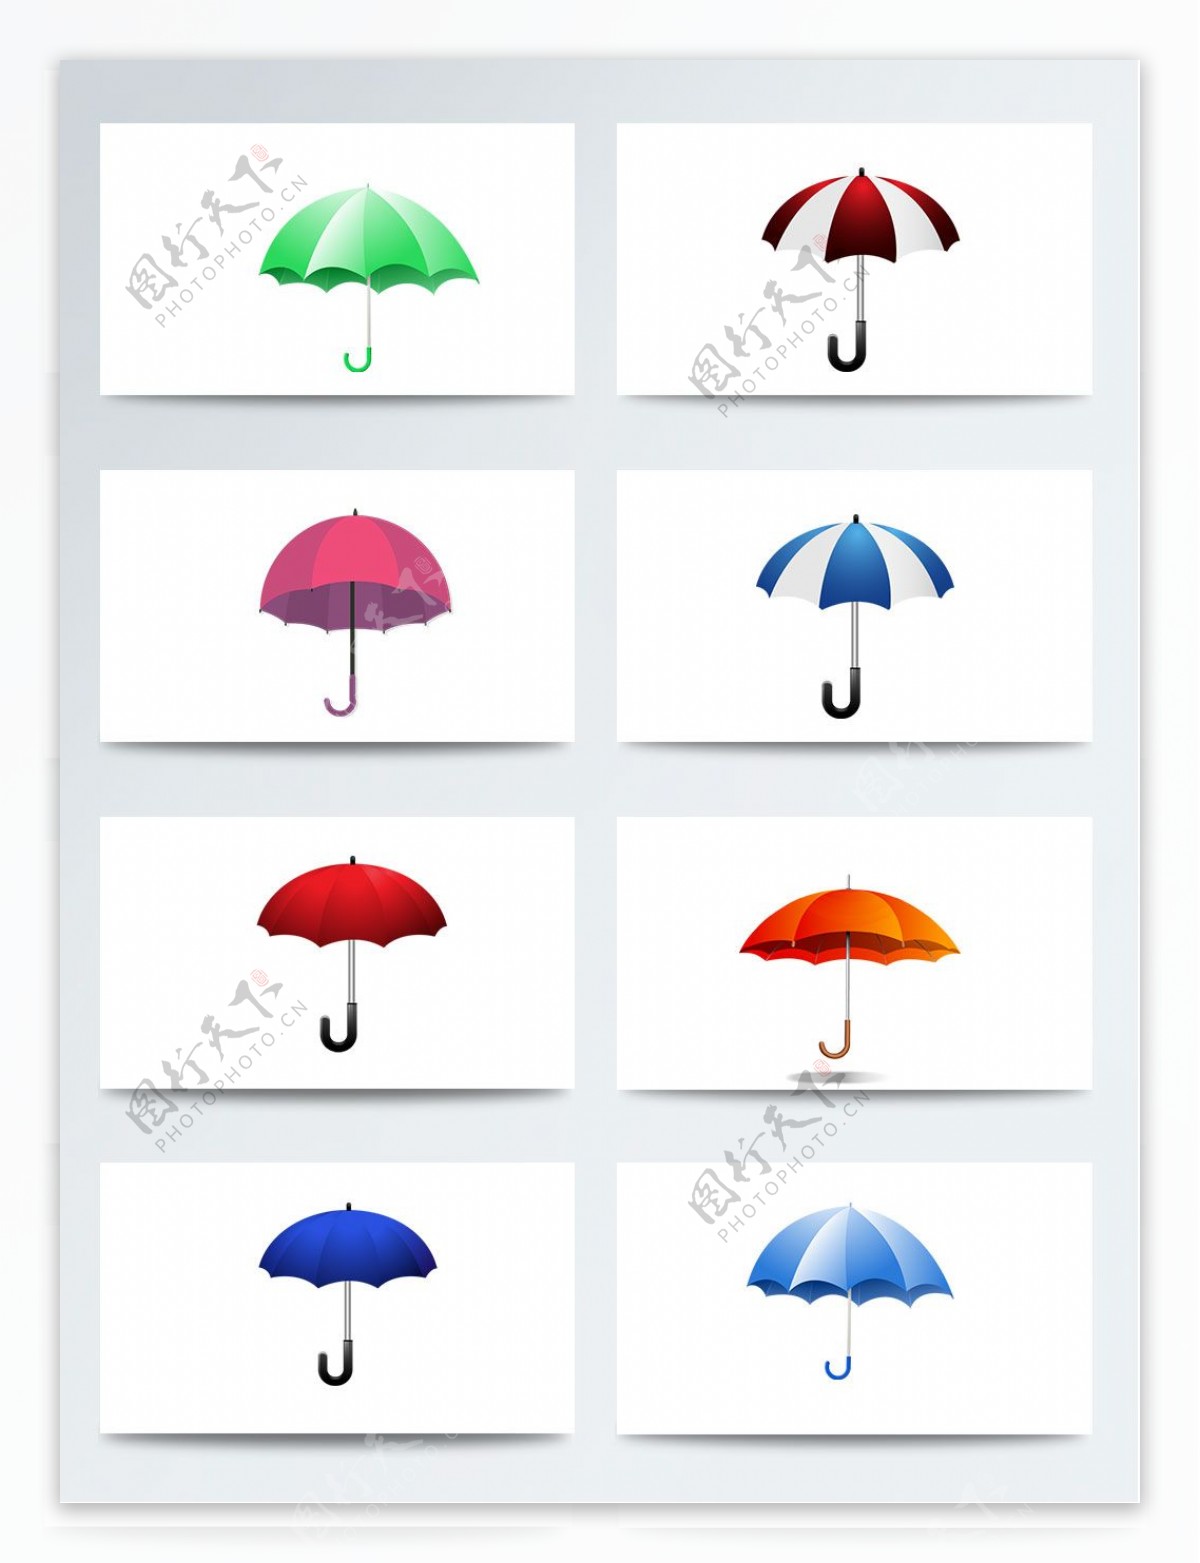 二十四节气雨水相关PNG元素卡通雨伞